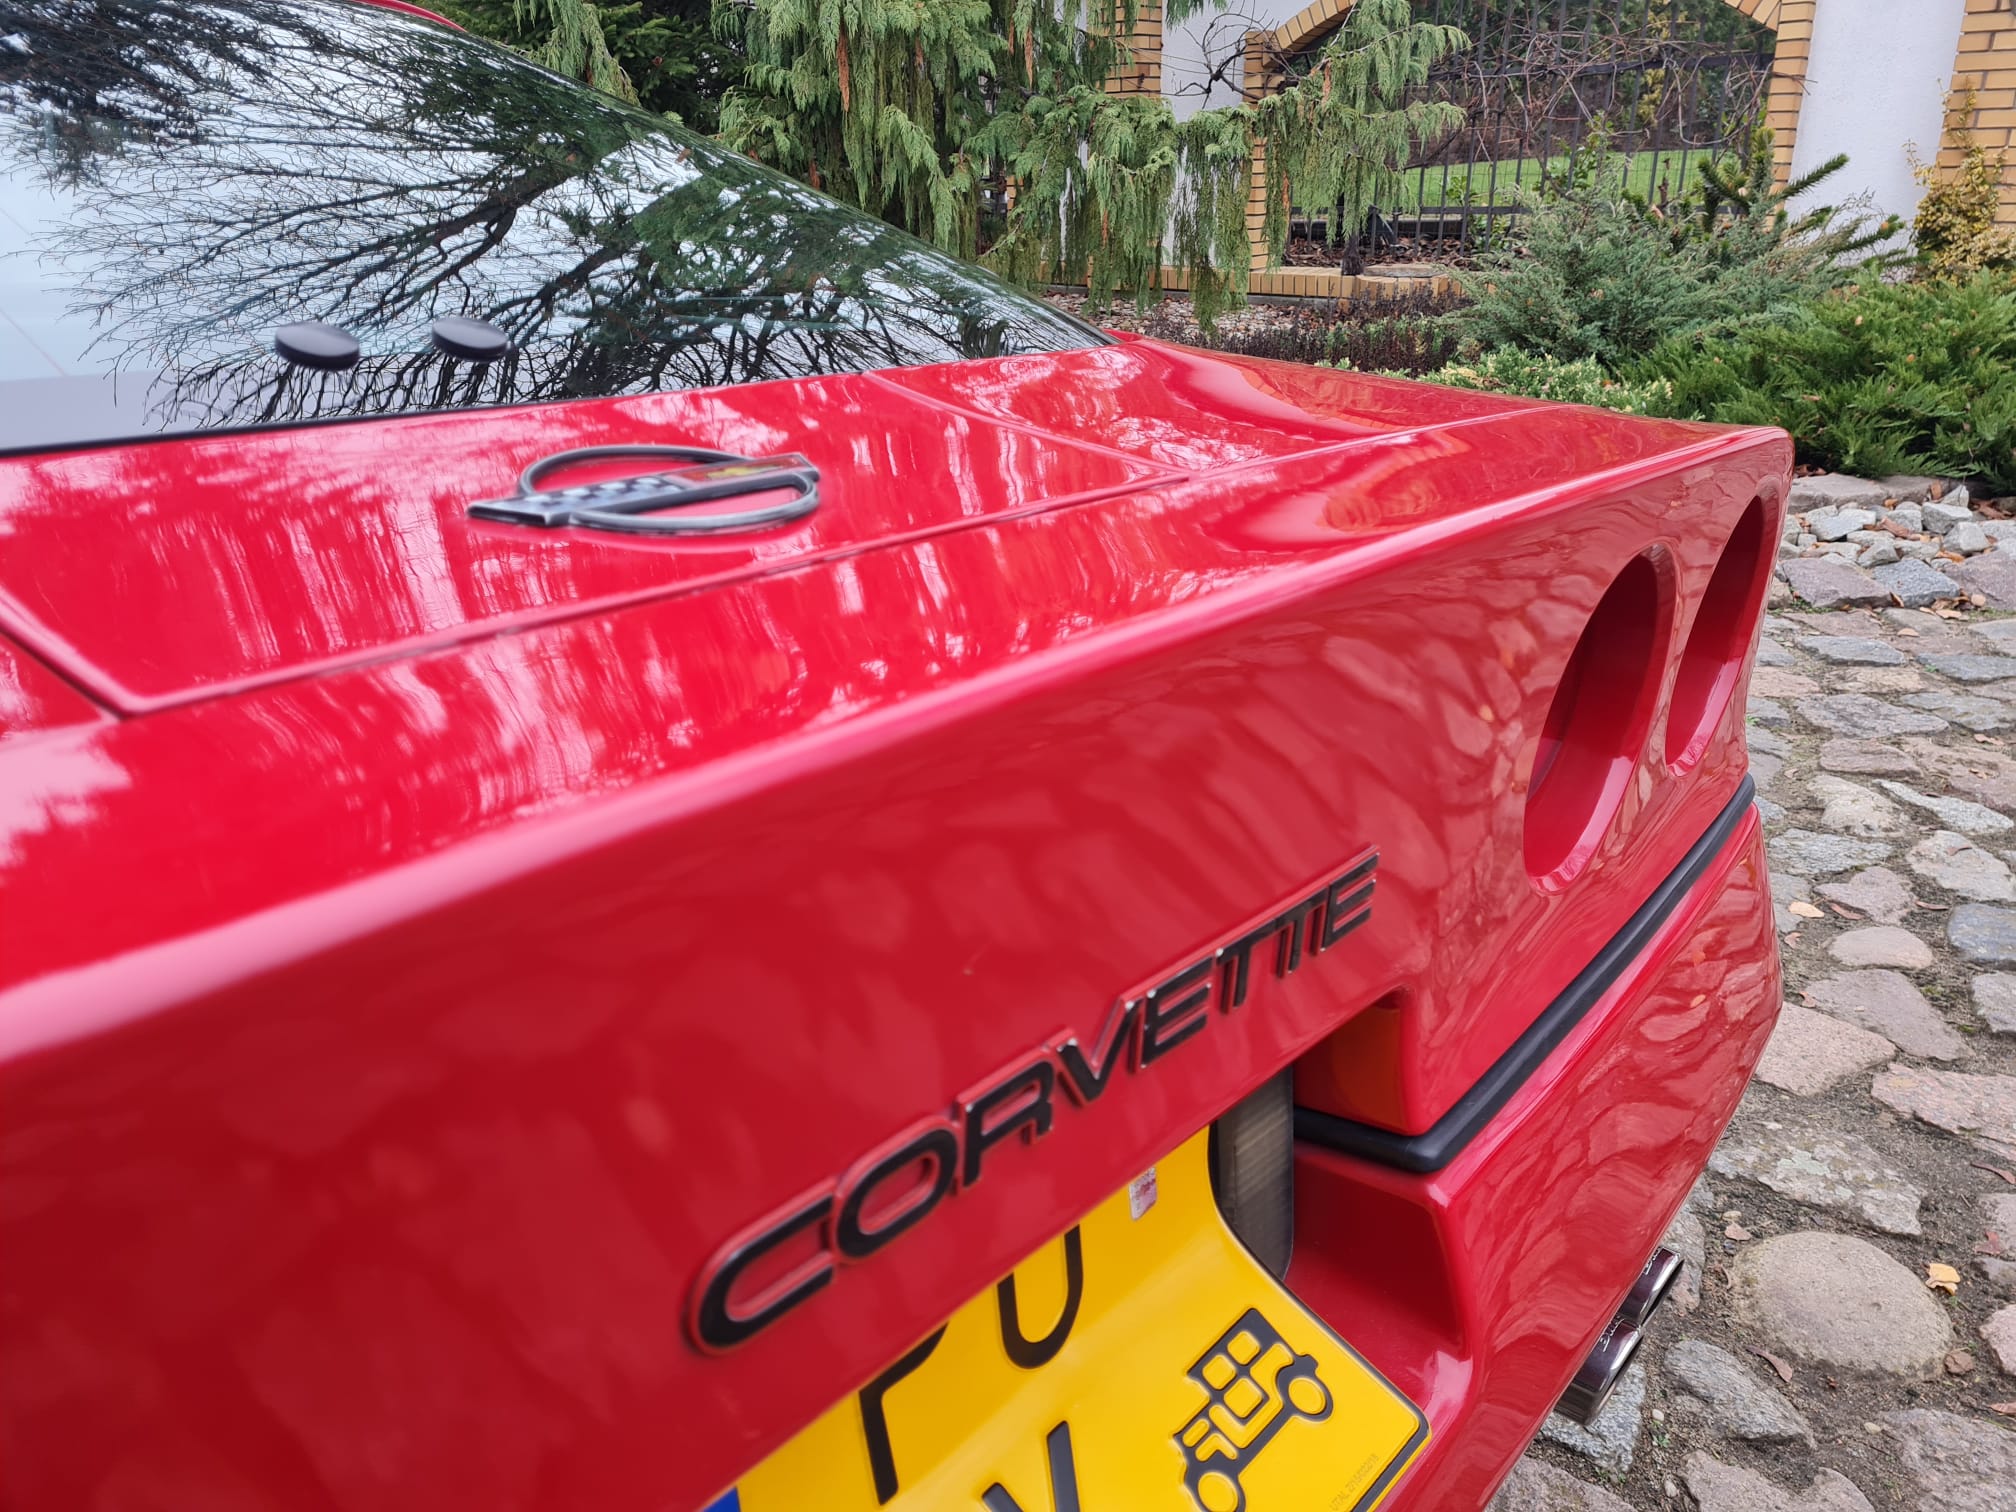 Corvette c4